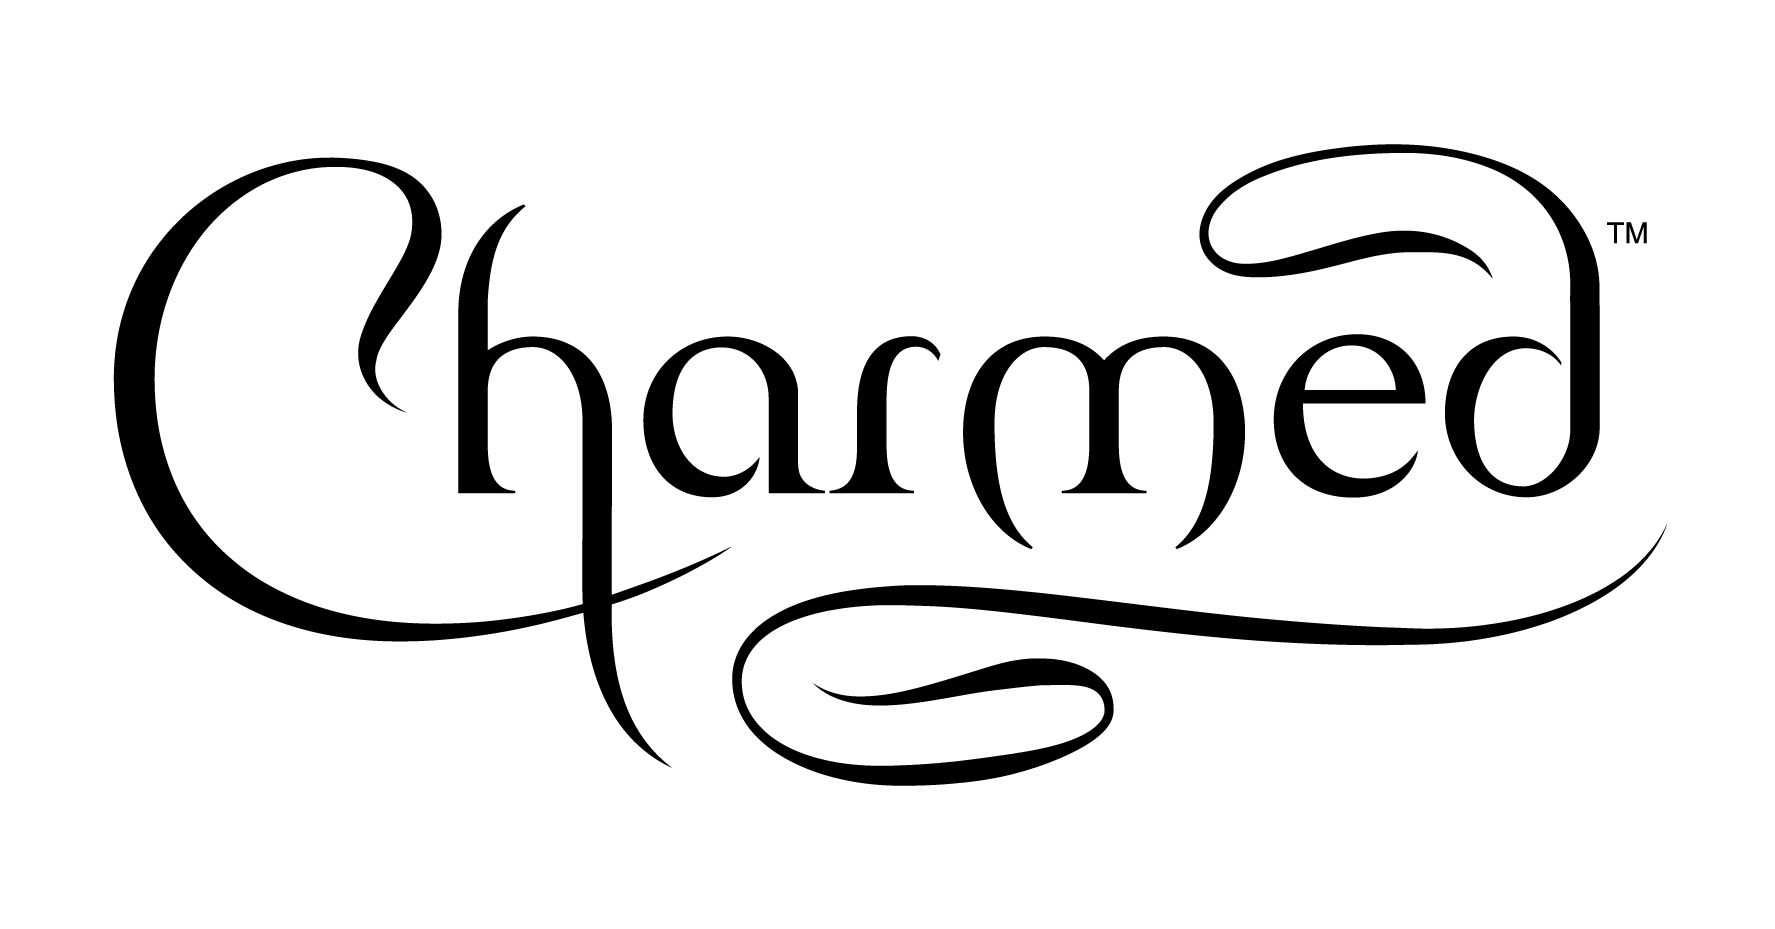 charmed2018-logo.jpg